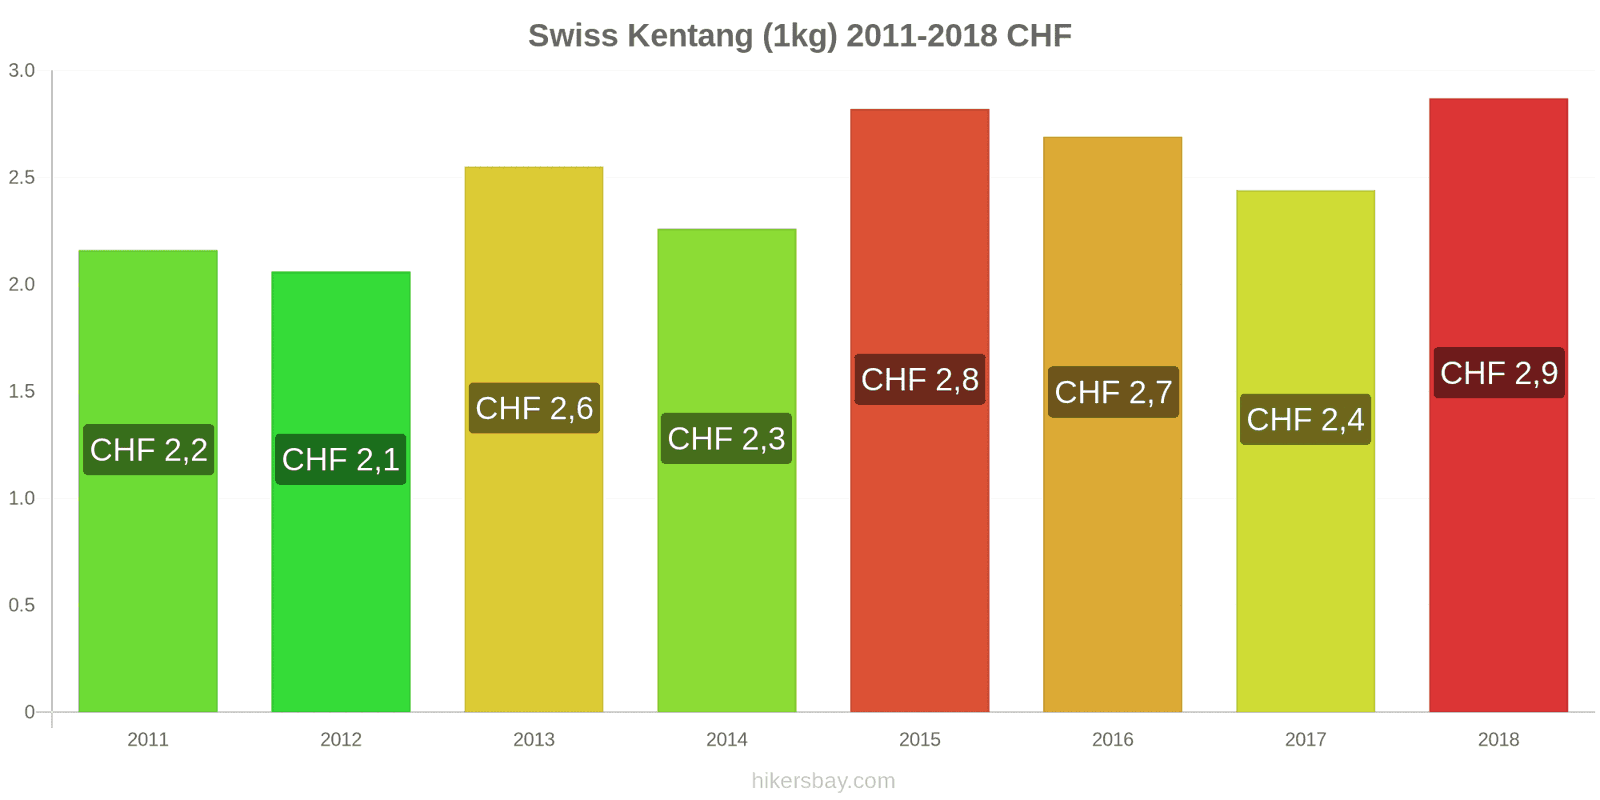 Swiss perubahan harga Kentang (1kg) hikersbay.com